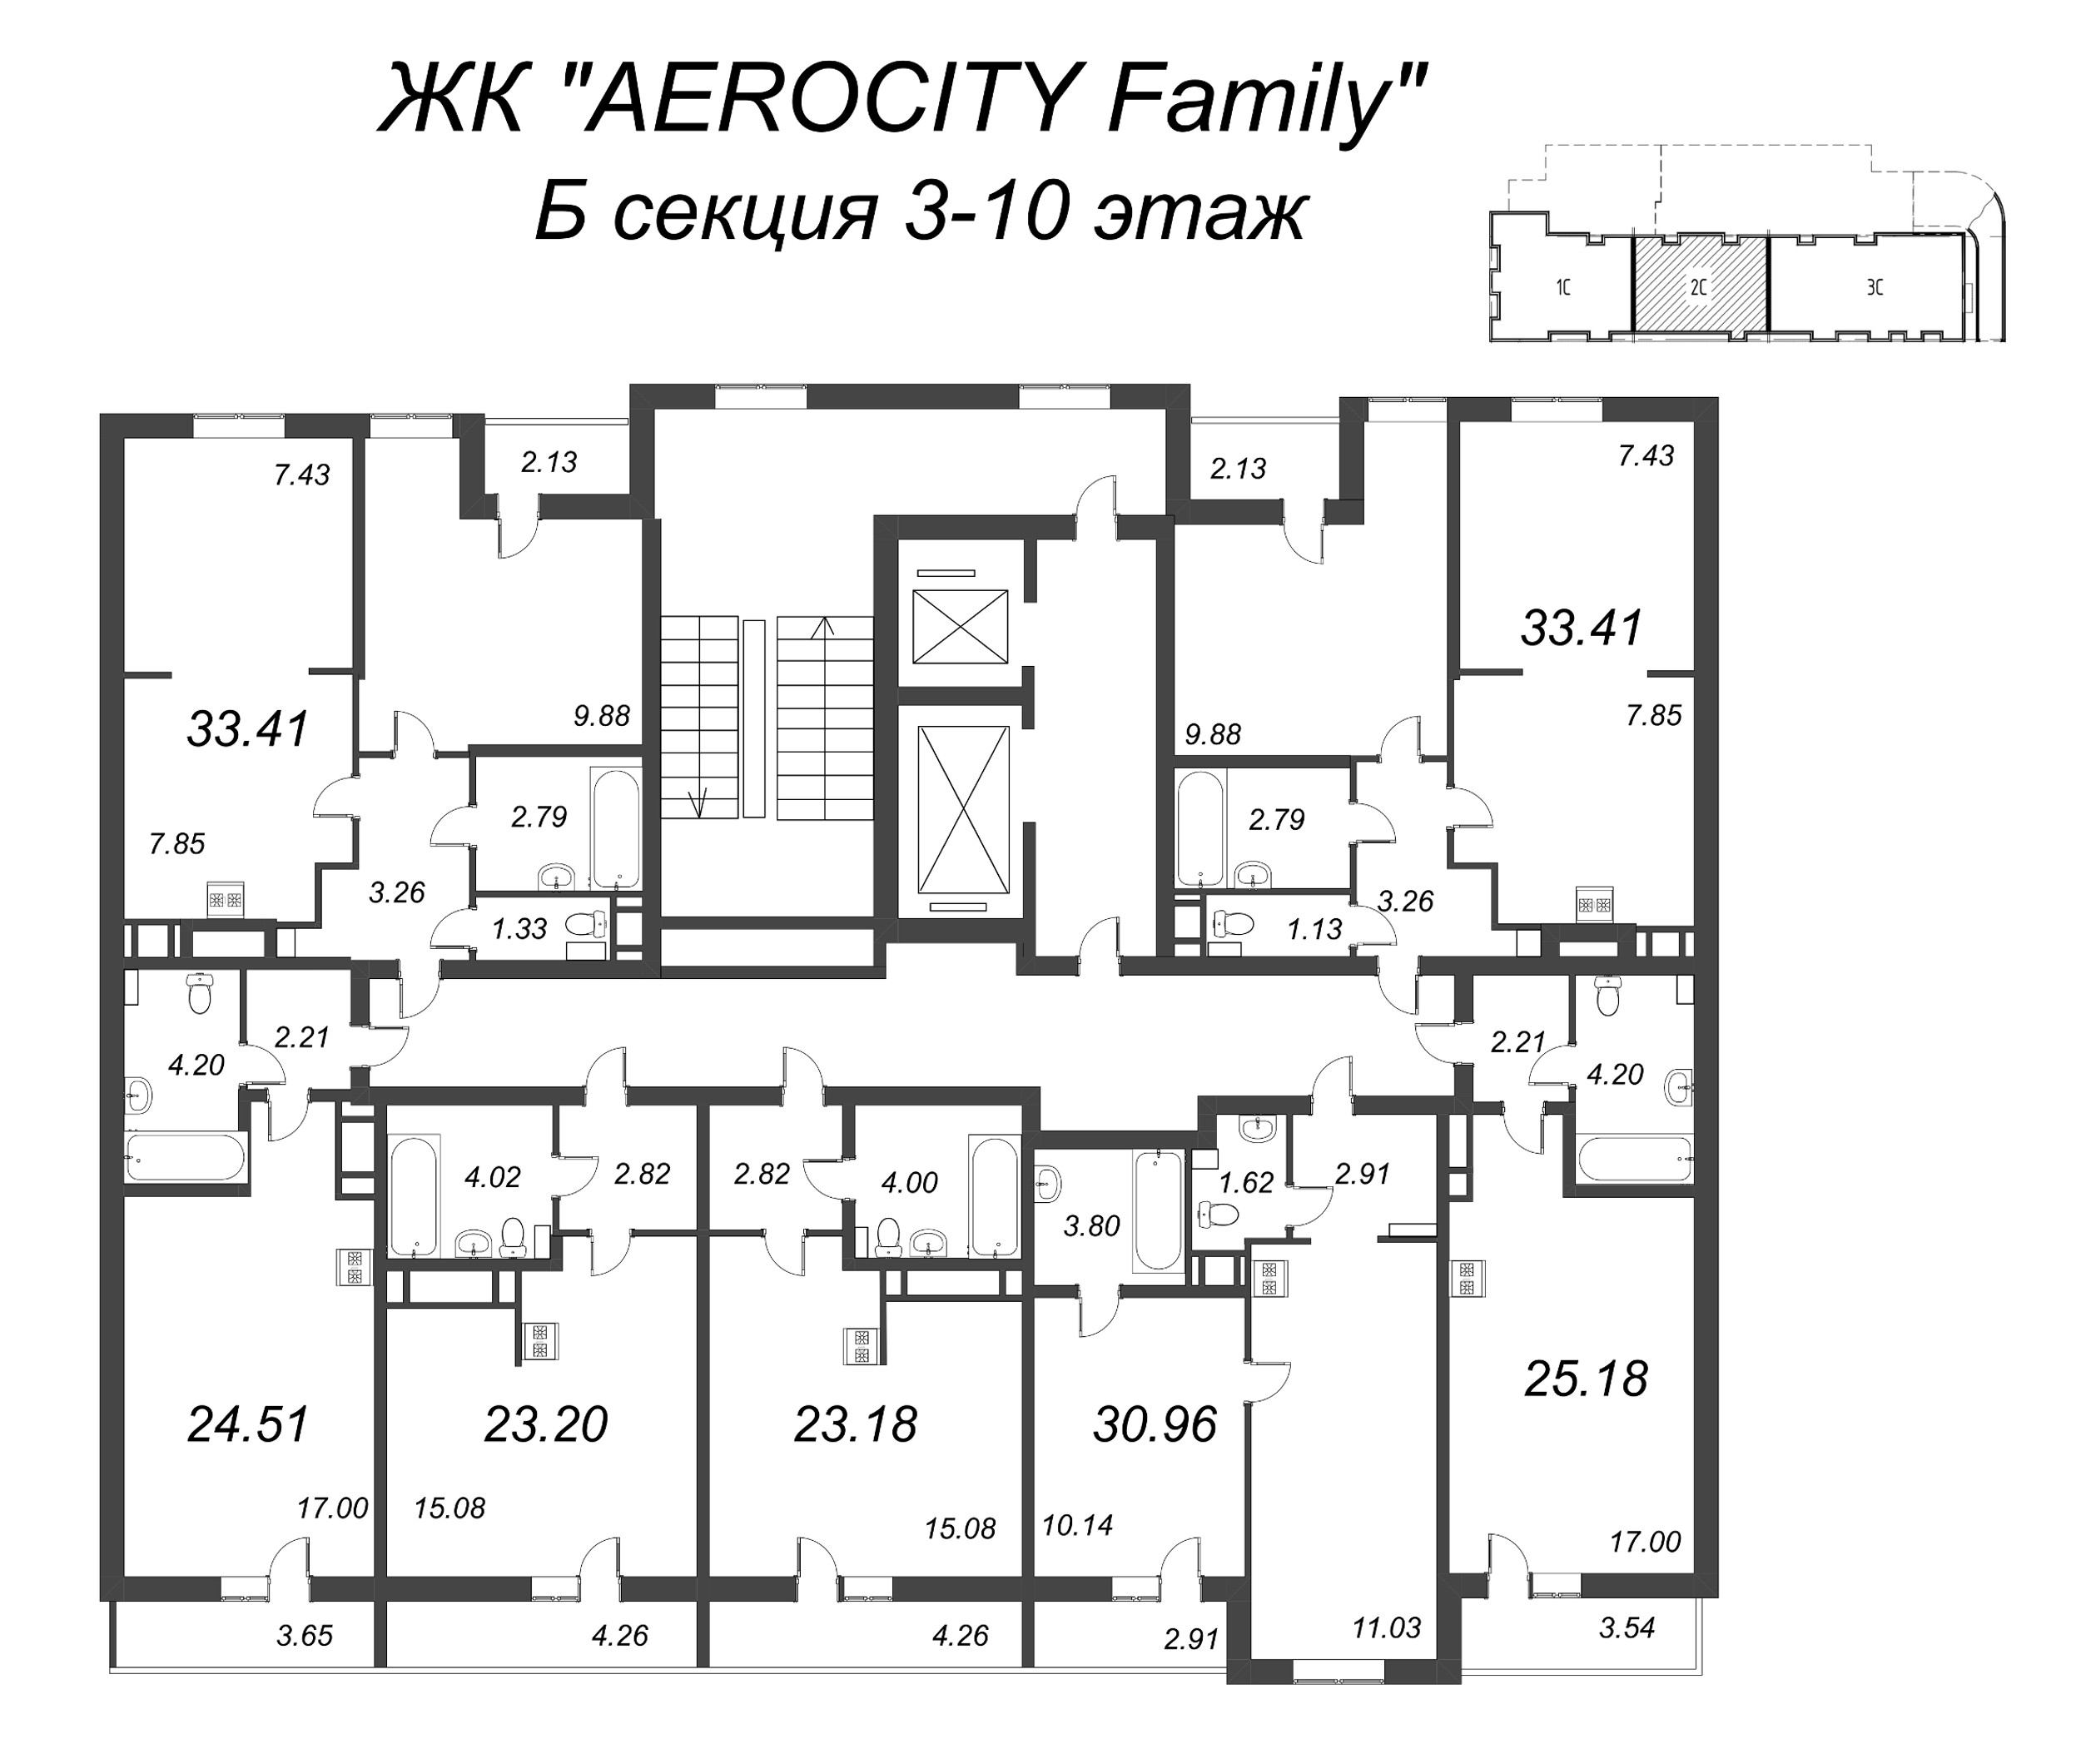 Квартира-студия, 23.18 м² в ЖК "AEROCITY Family" - планировка этажа